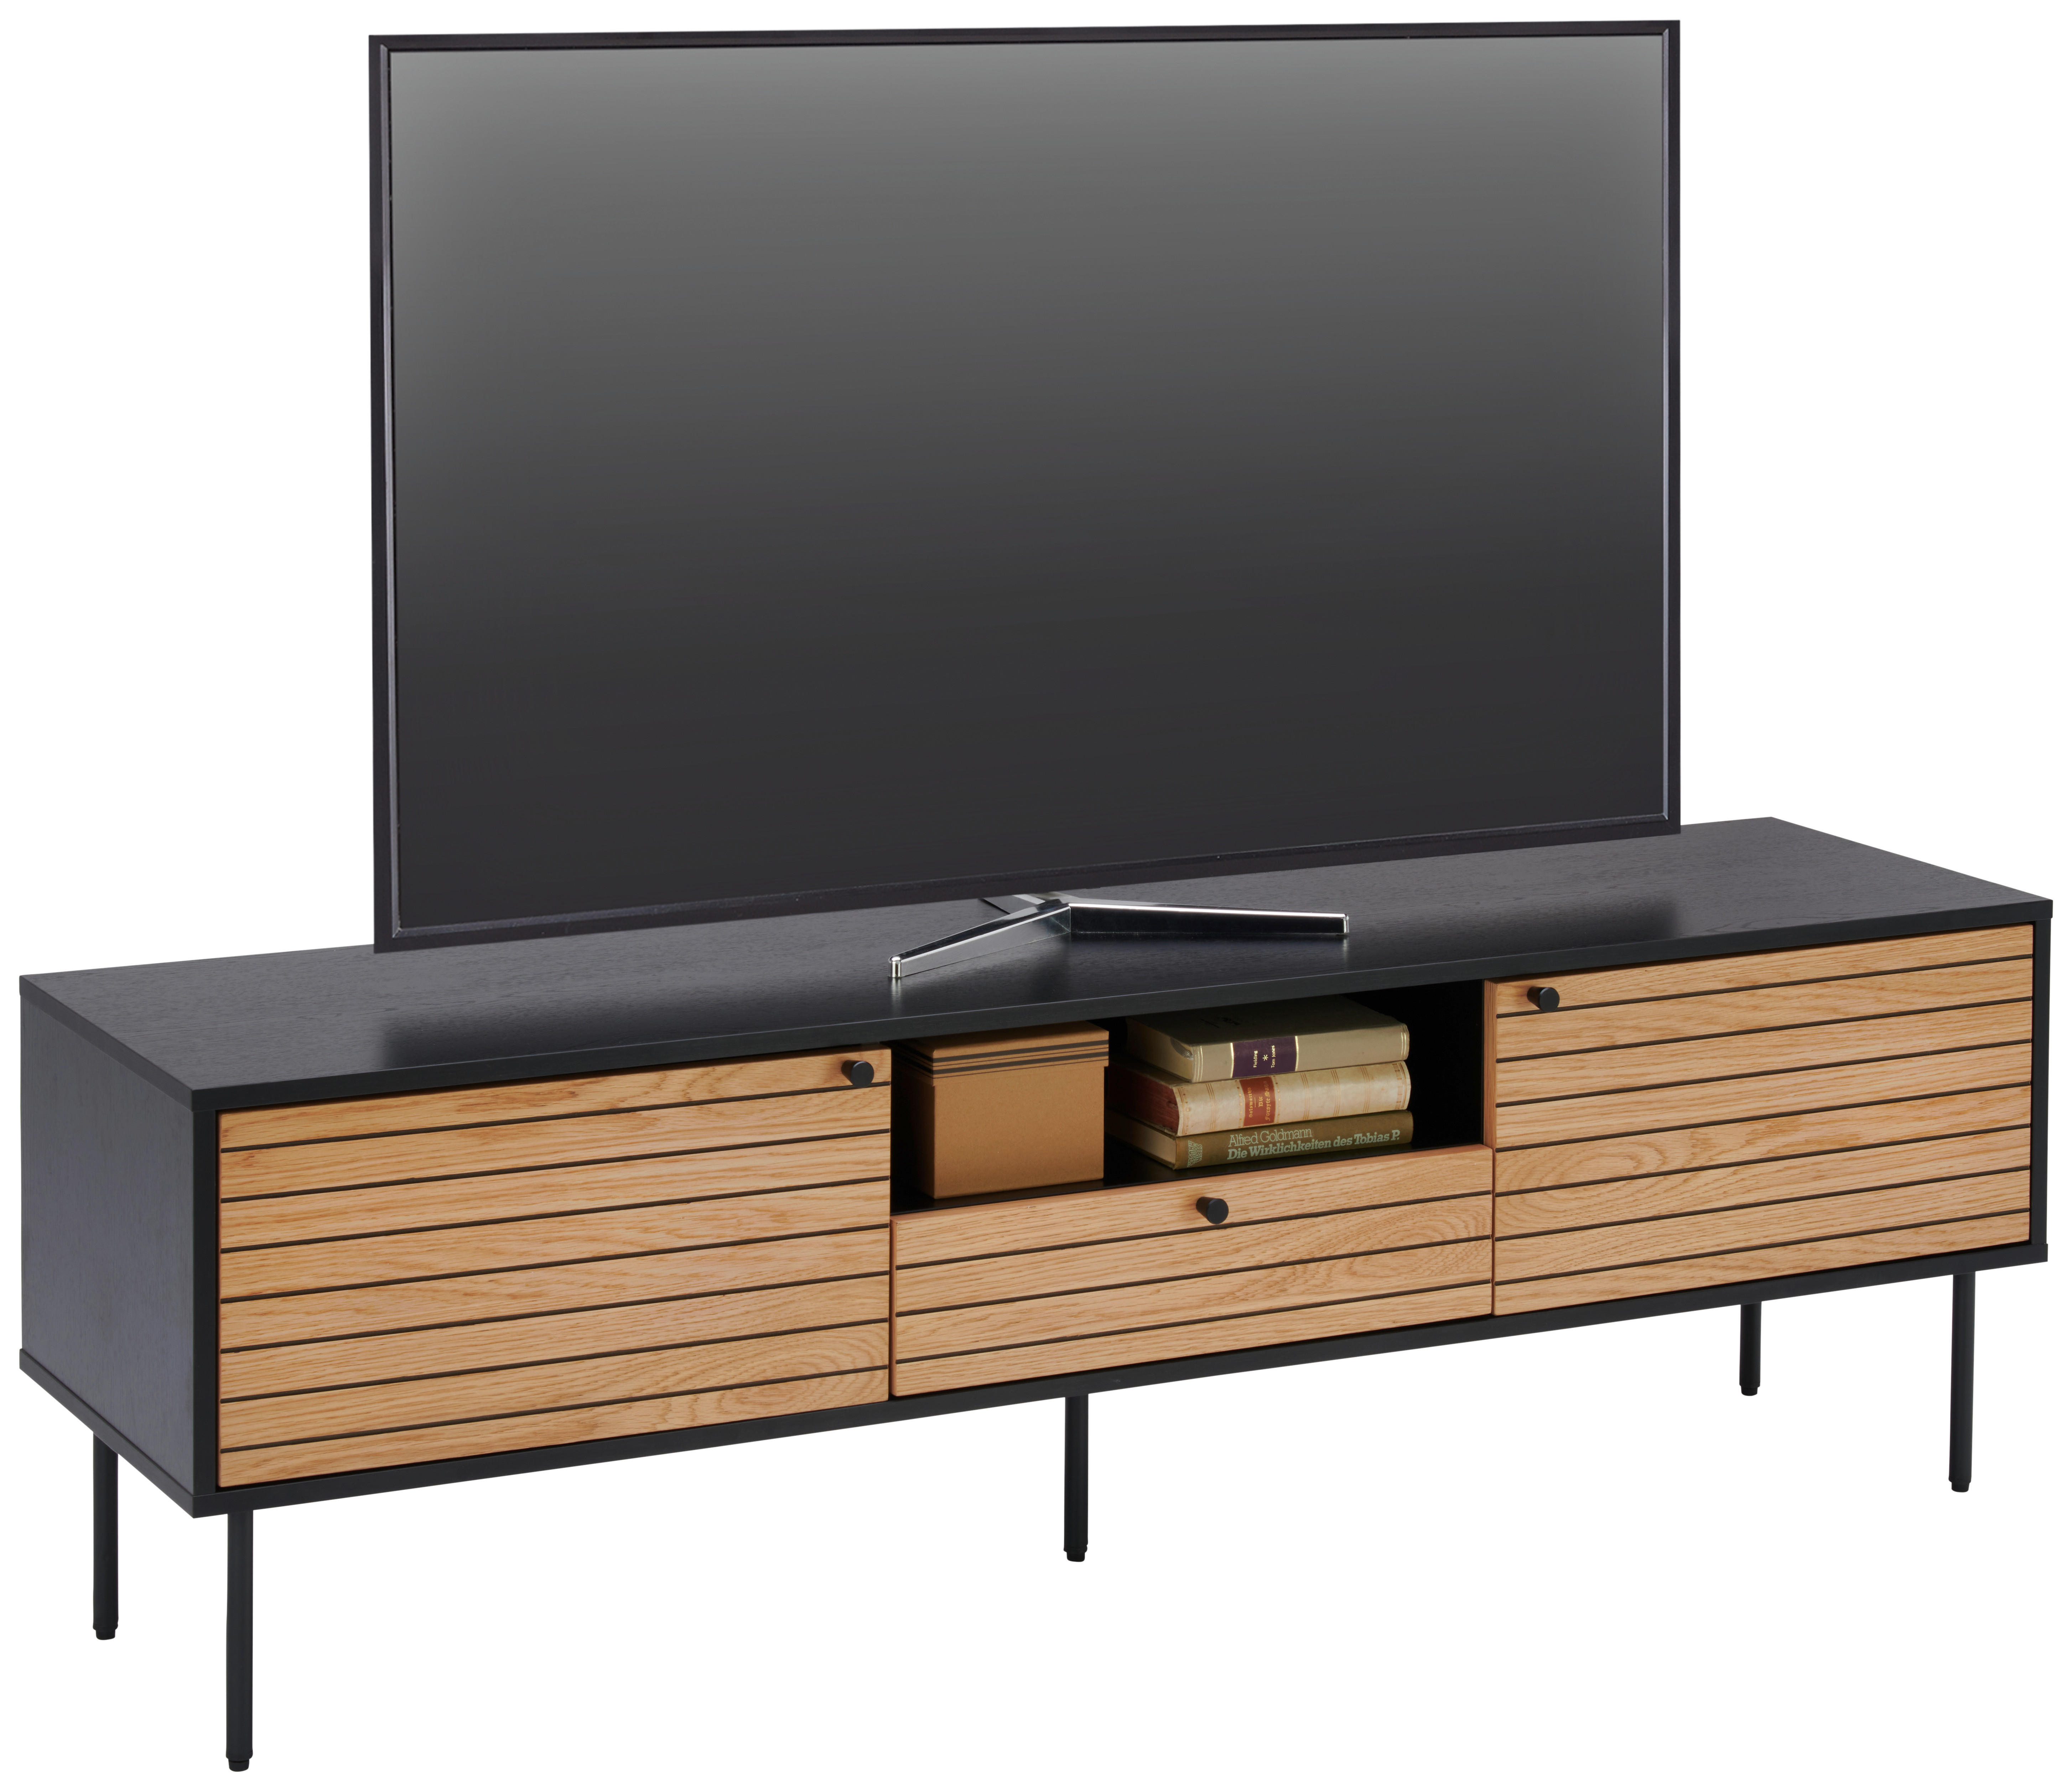 TV-BÄNK 160/50/40 cm  - svart/ekfärgad, Design, metall/träbaserade material (160/50/40cm) - Xora